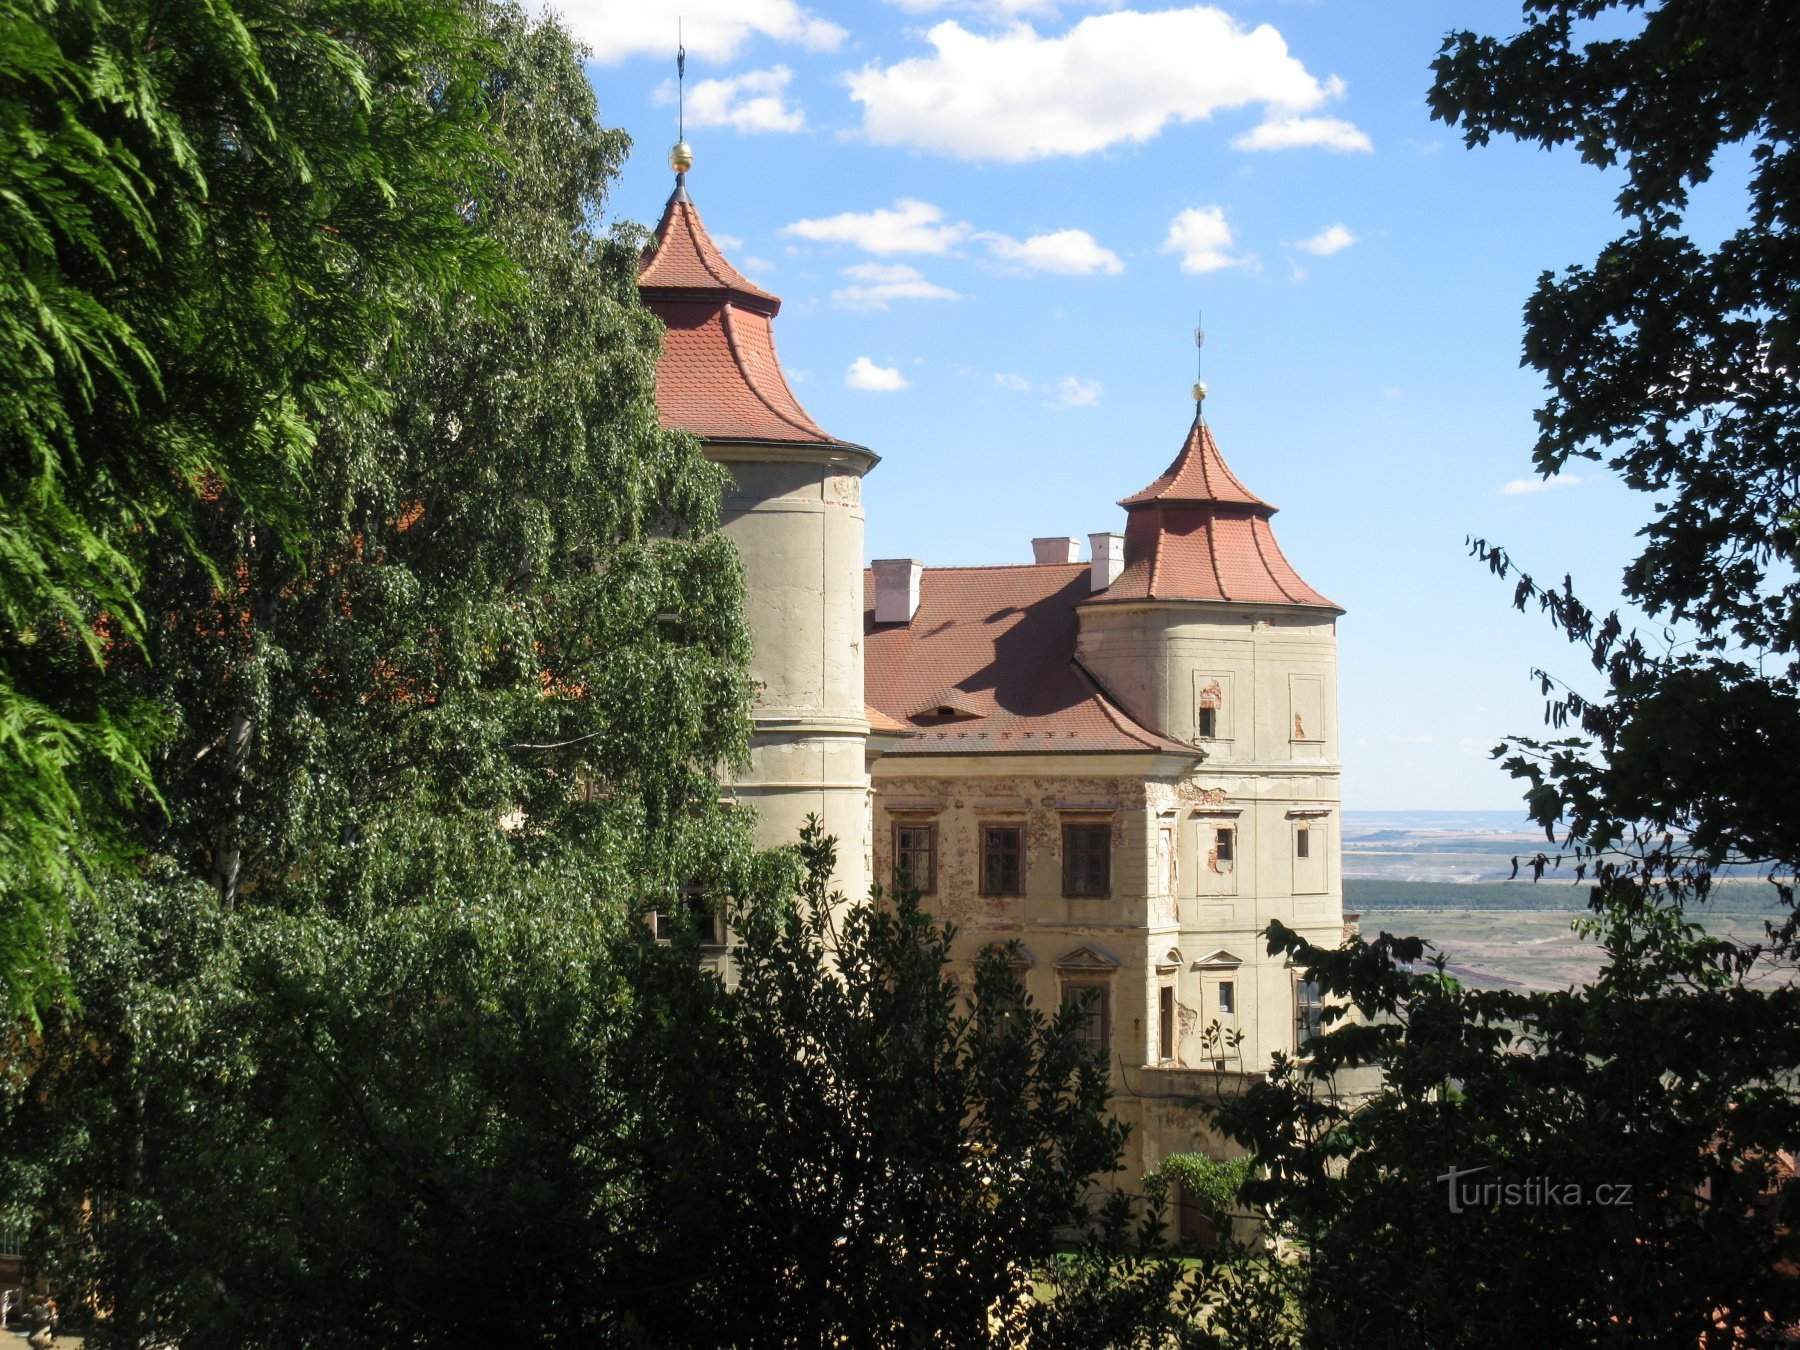 Pogled na grad s stranskega vhoda